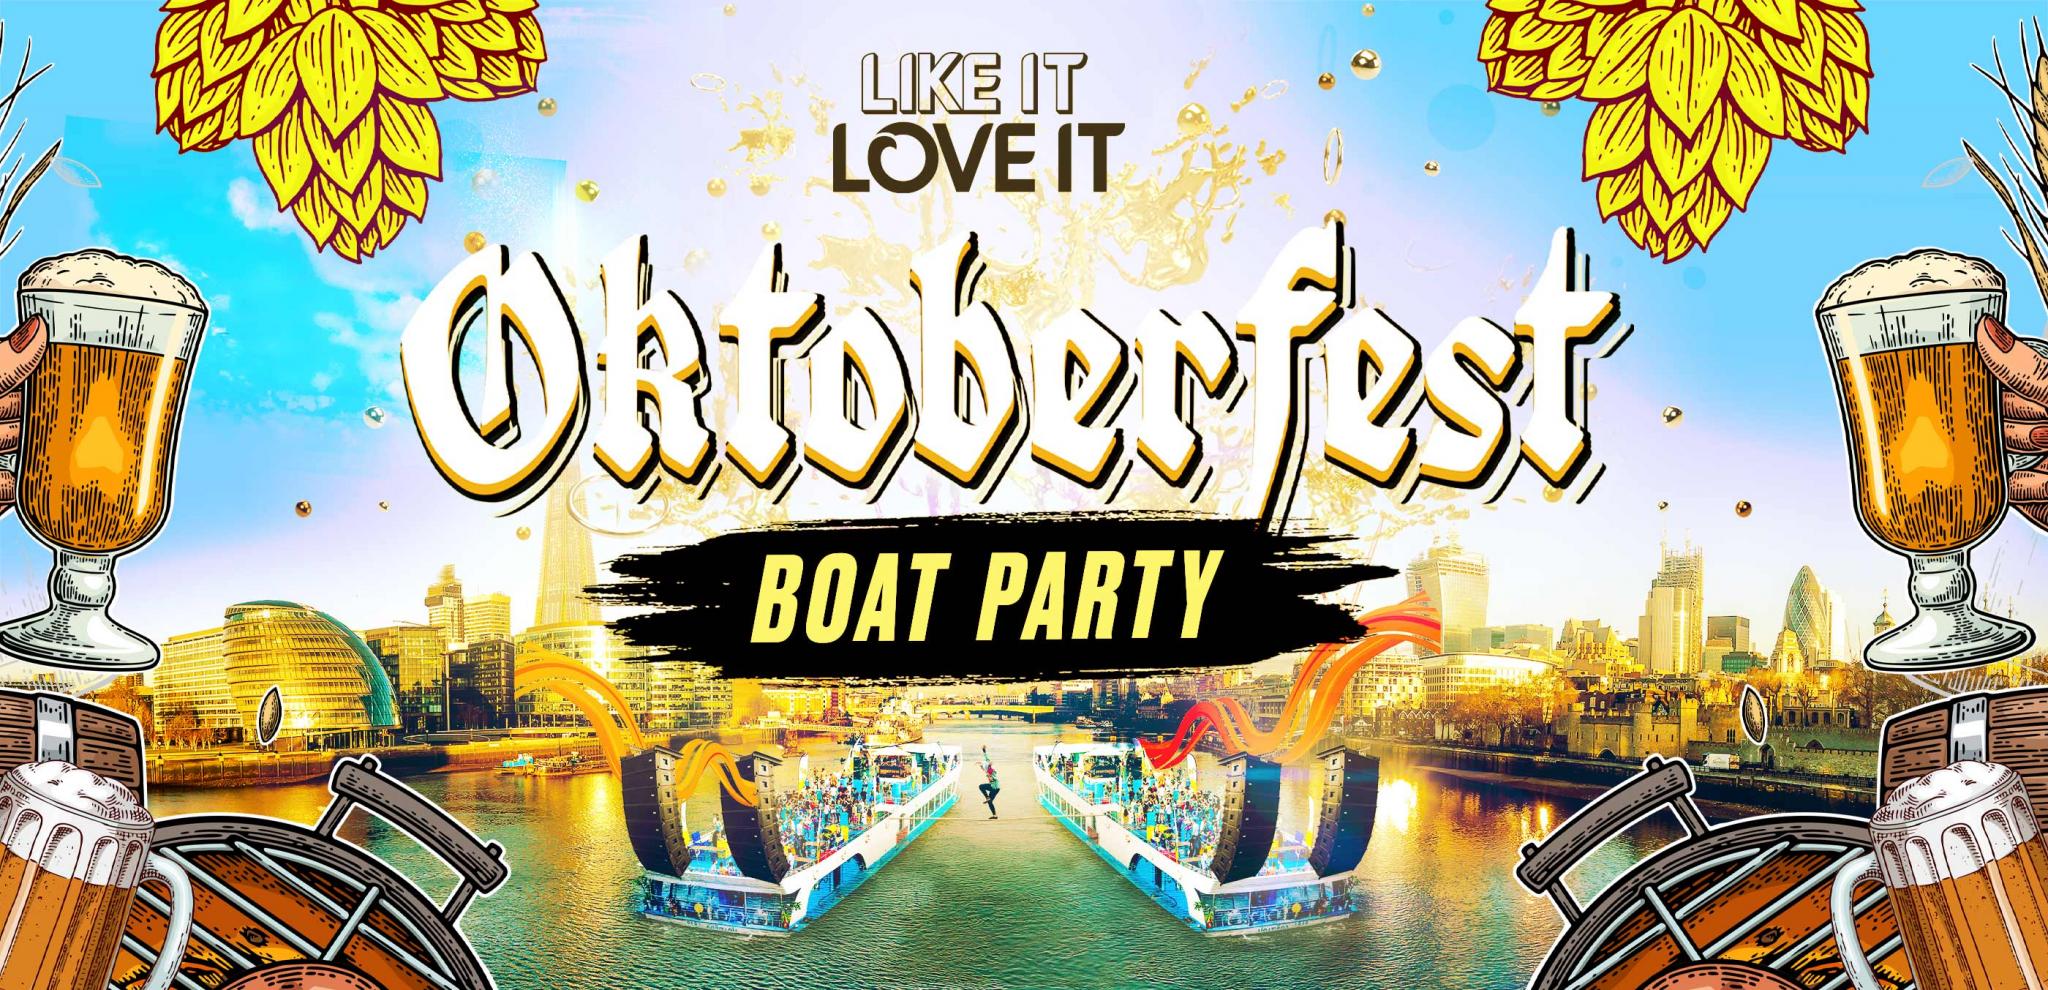 OKTOBERFEST Boat Party - London